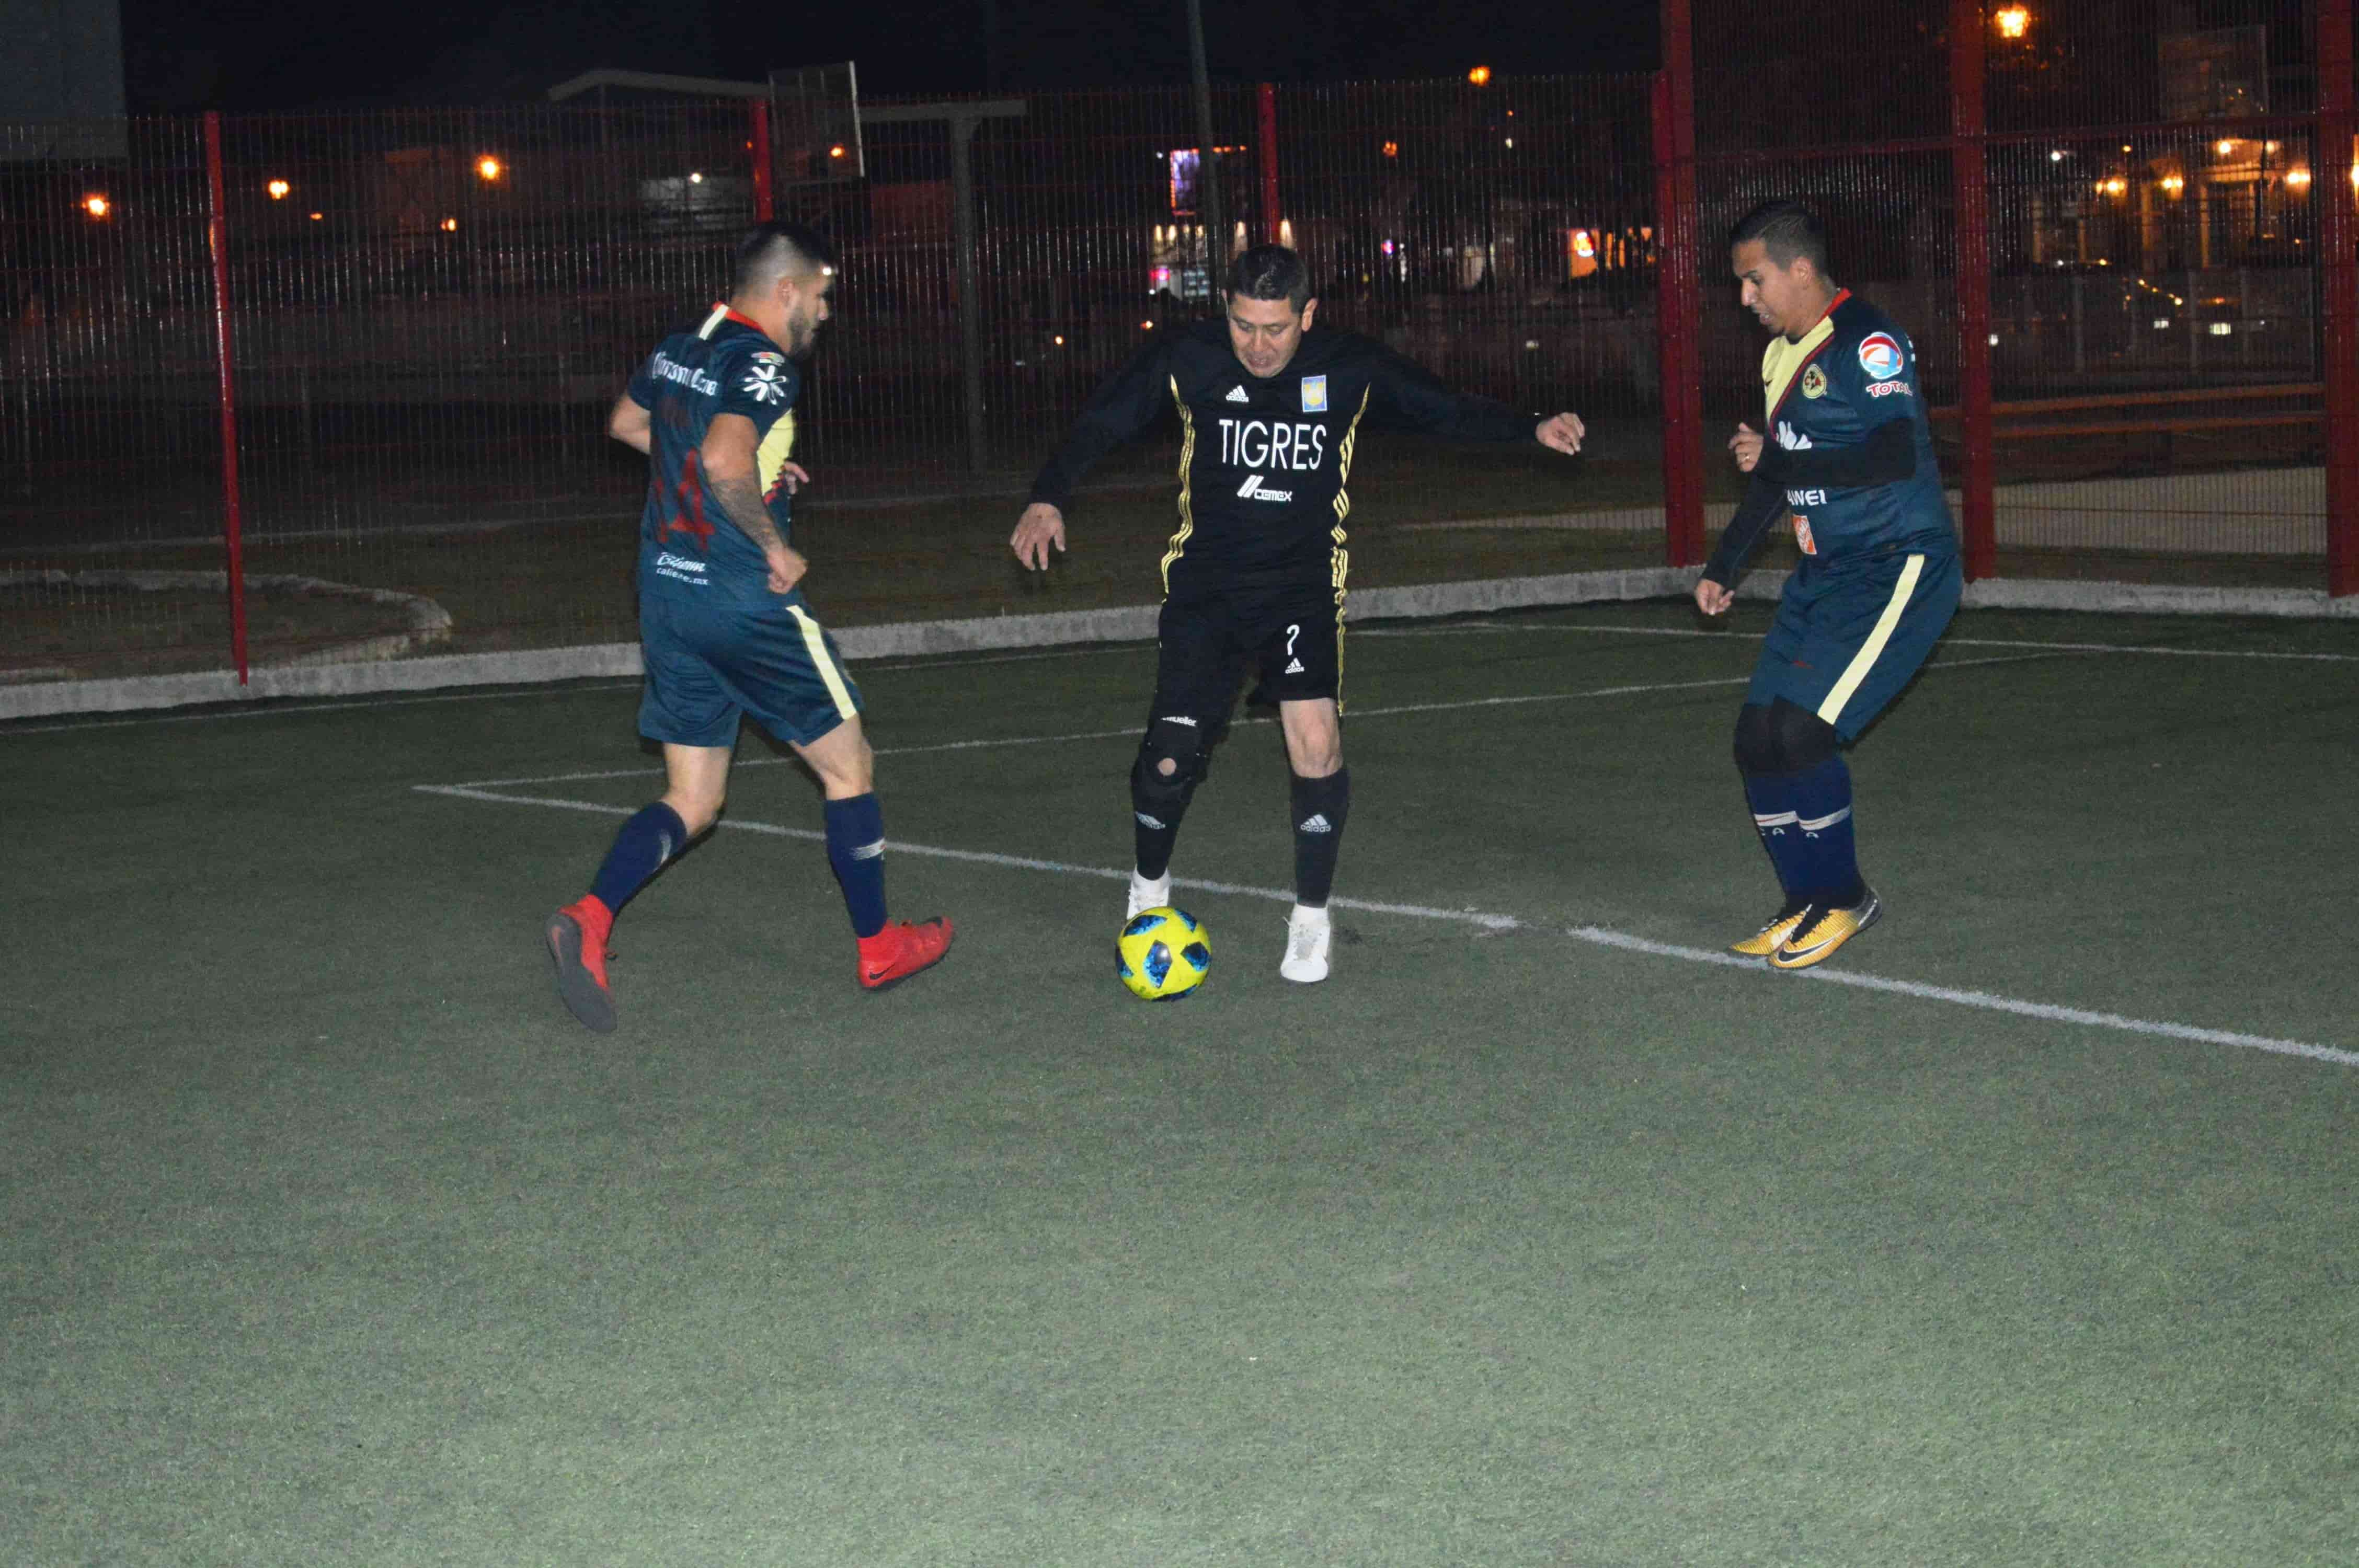 Firman otra goleada los tres Hernández  en la liga de futsal 7 Barrios Unidos